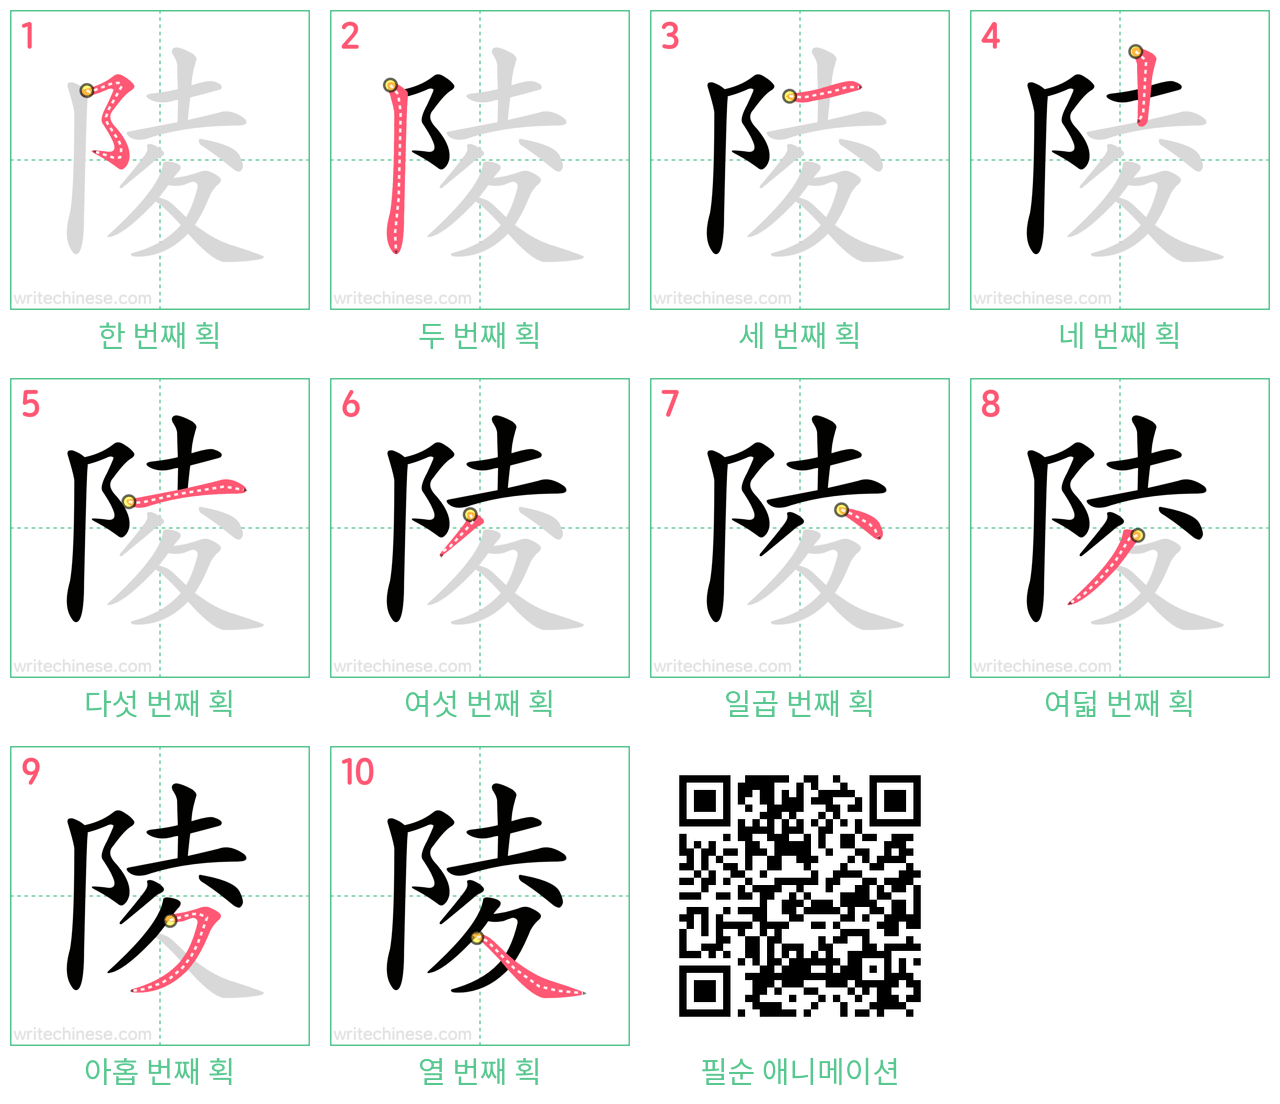 陵 step-by-step stroke order diagrams